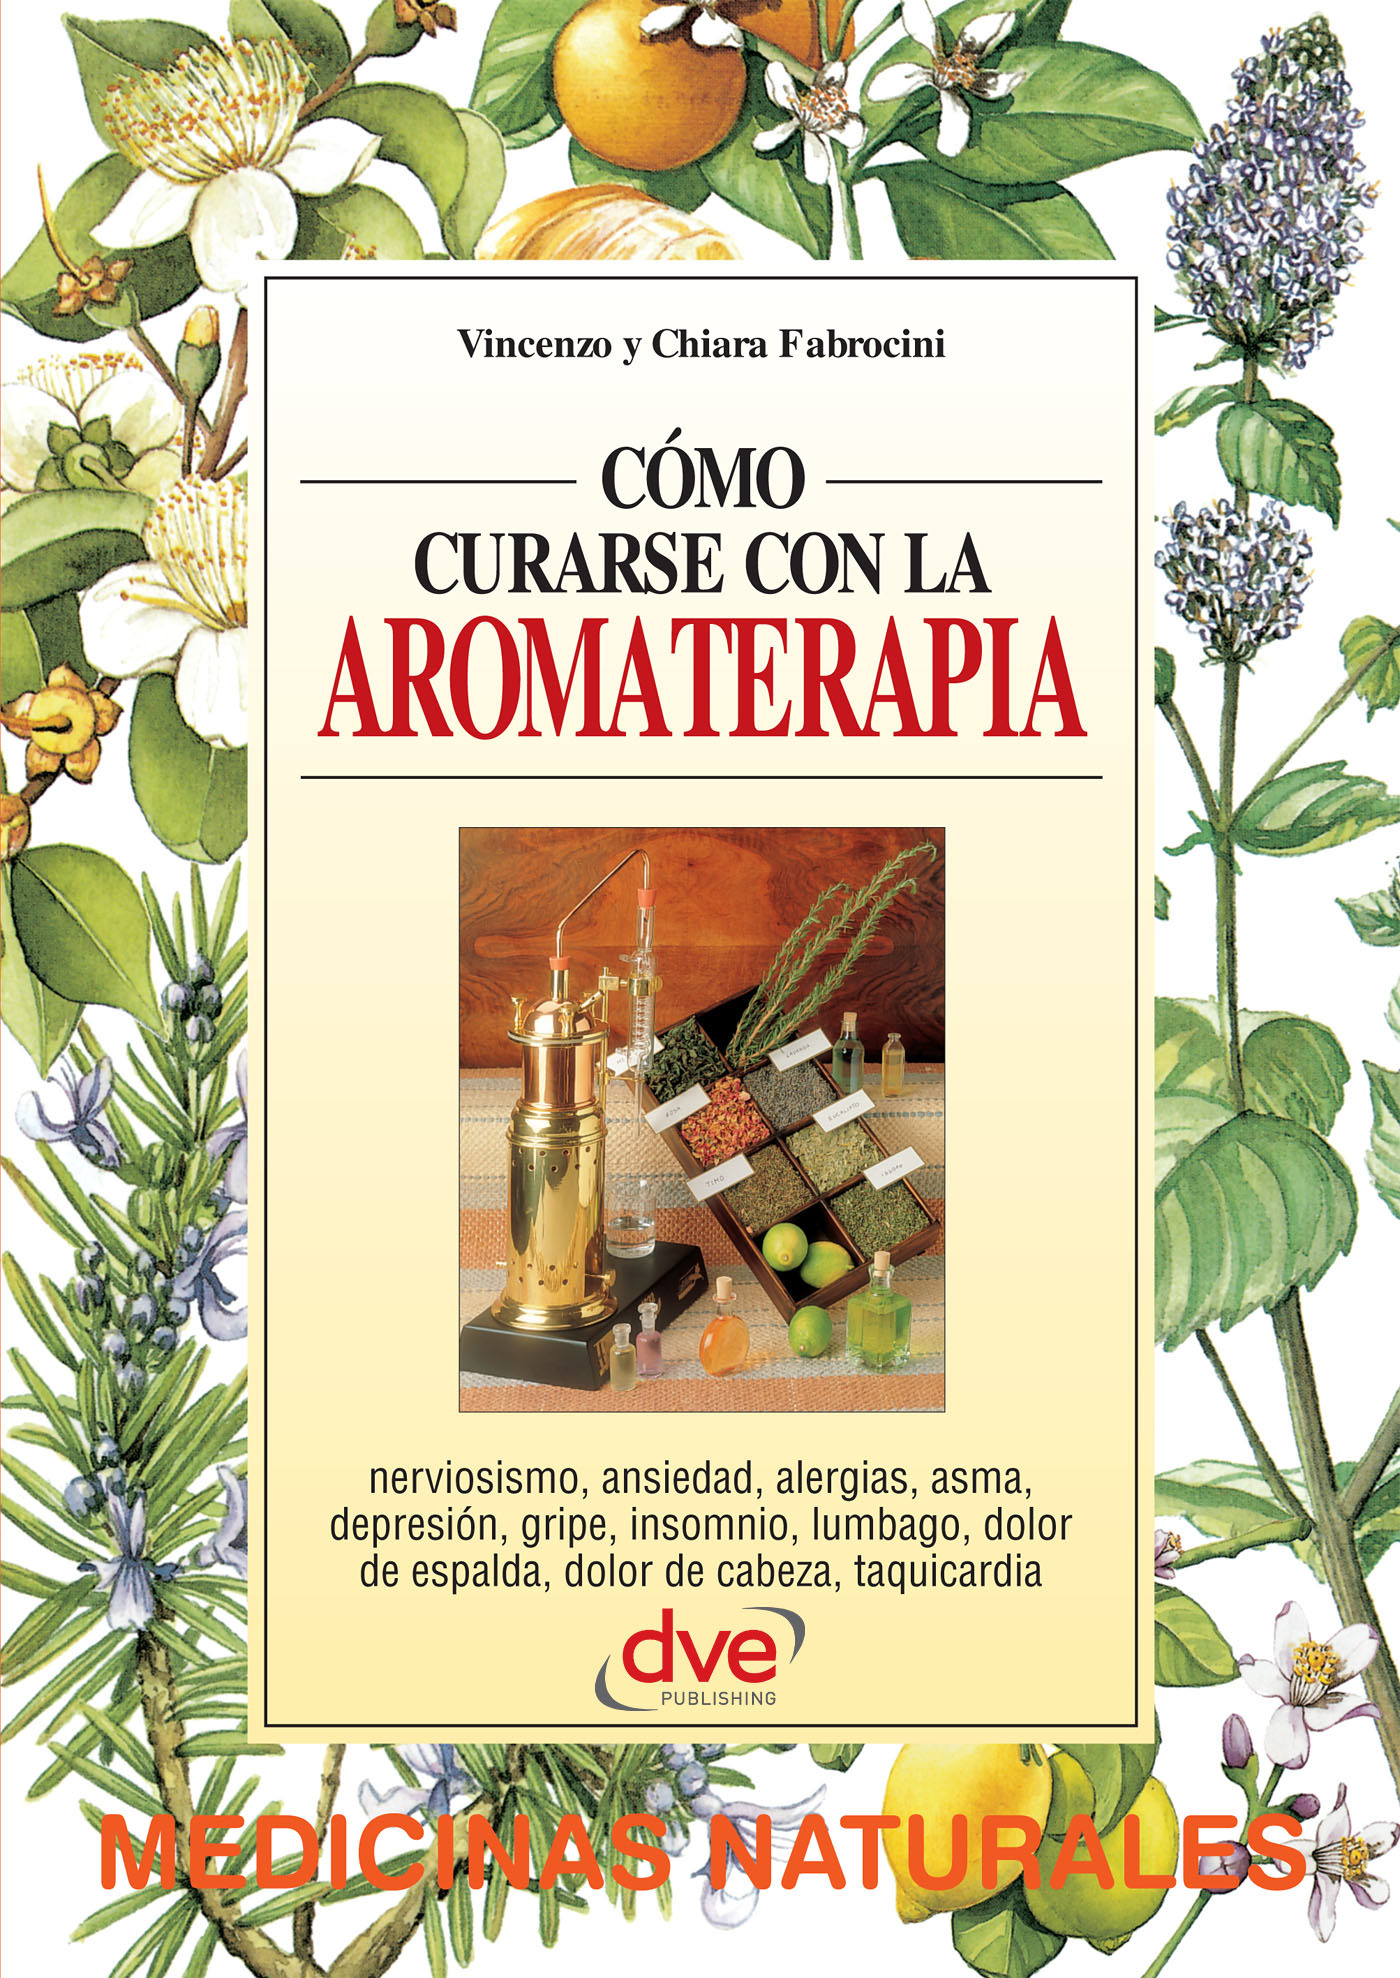 Fabrocini, Chiara - Cómo curarse con la aromaterapia, ebook